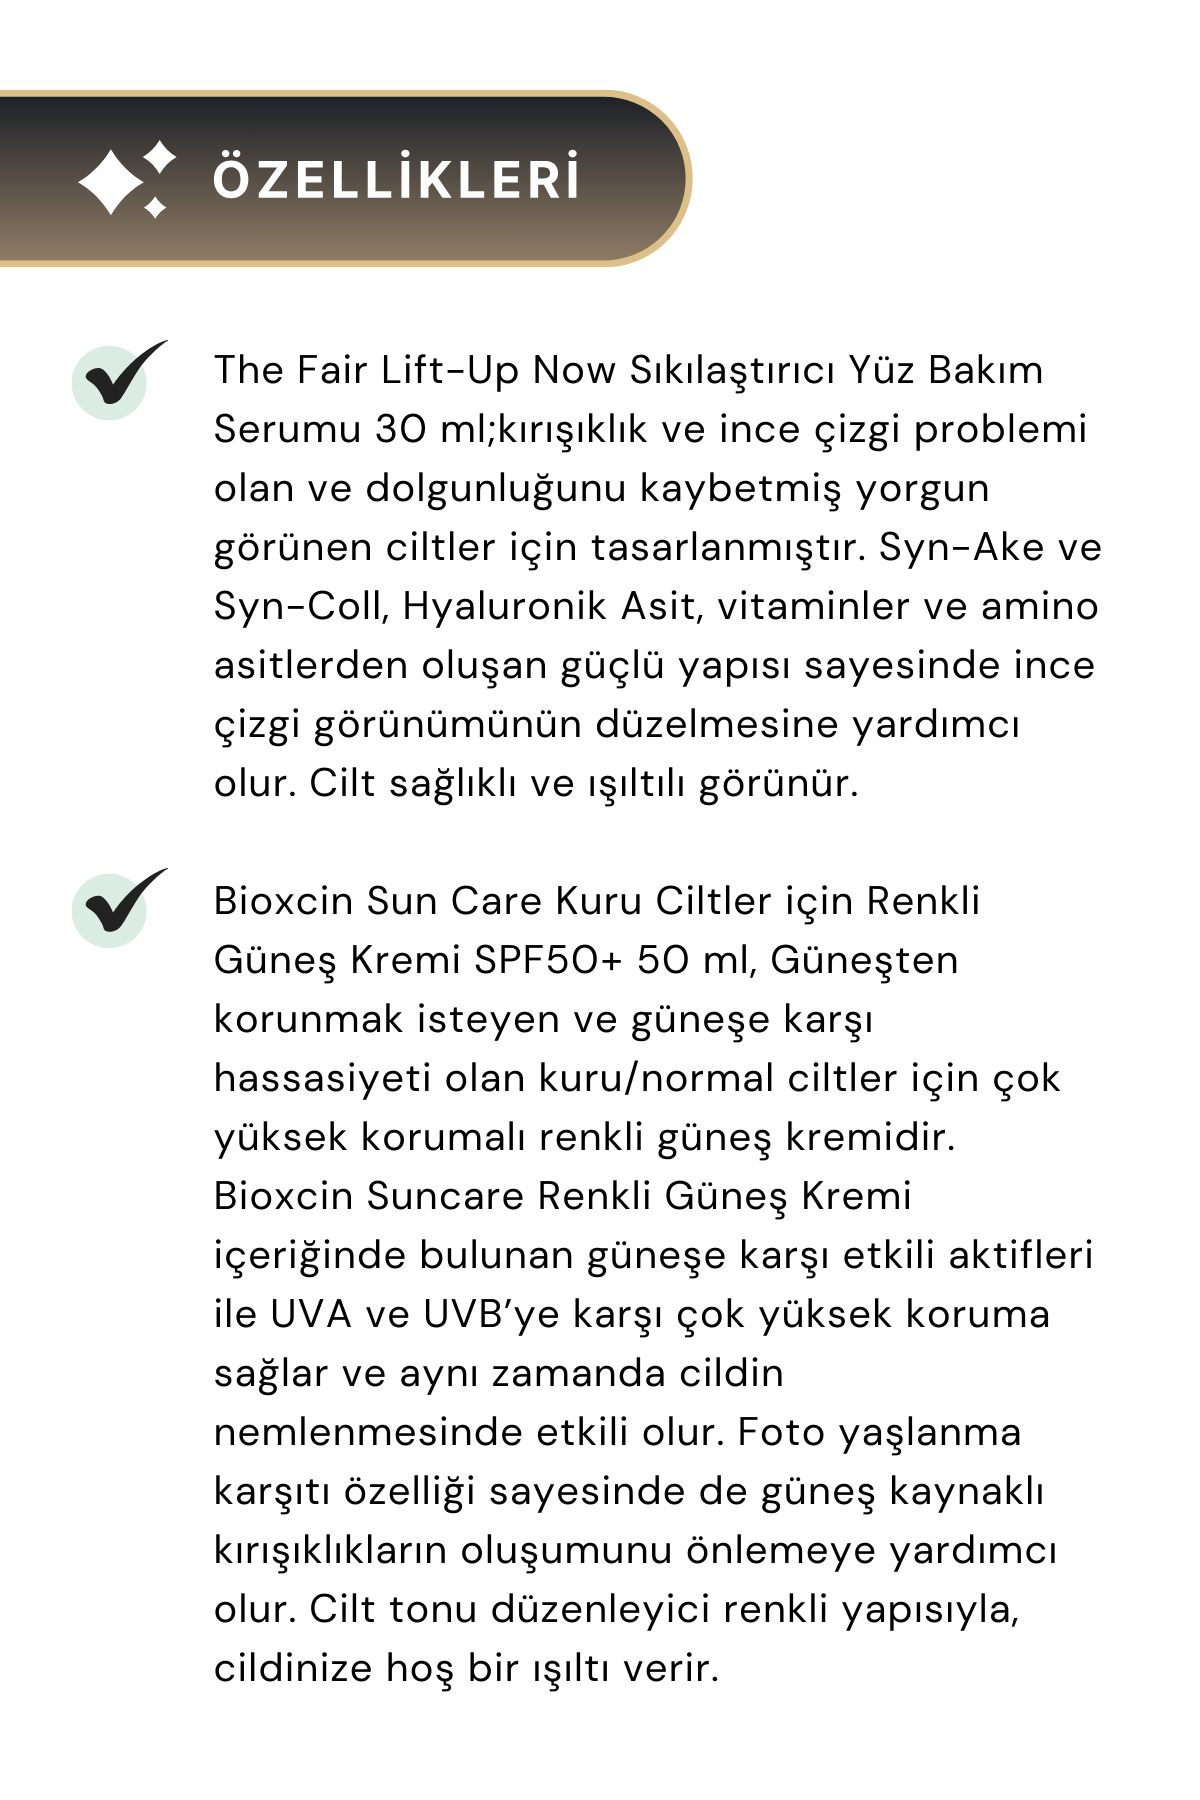 Bioxcin Sun Care Kuru Ciltler için Renkli Güneş Kremi SPF50+ 50 ml & The Fair Lift-Up Now Yüz Bakım Serumu 30 ml